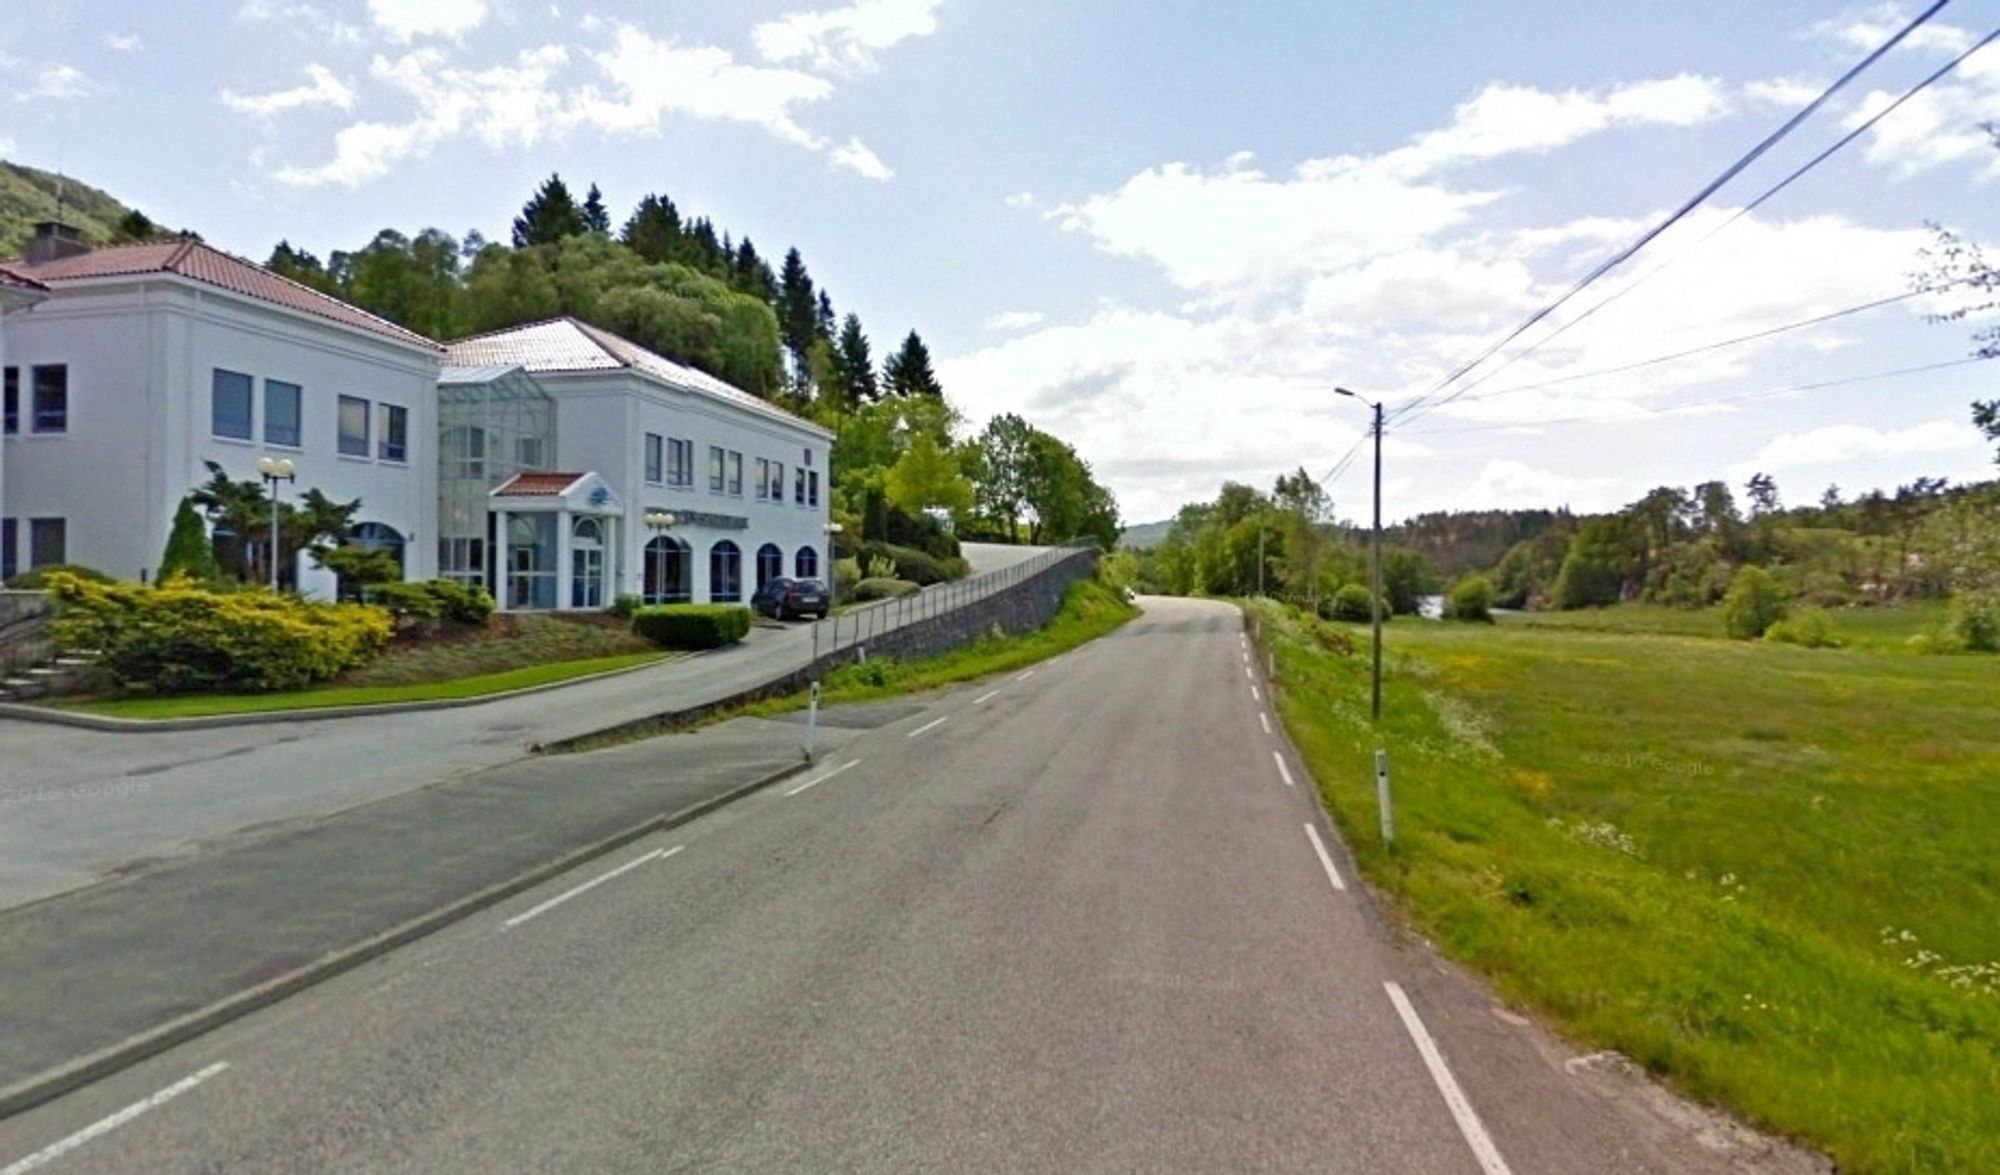 Her i Uggdal, kommunesentret i Tysnes, slutter fortauet langs fylkesveg 49. Herfra skal det forlenges med 1,1 km sørover og kjørebanen skal utbedres. (Foto: Google)